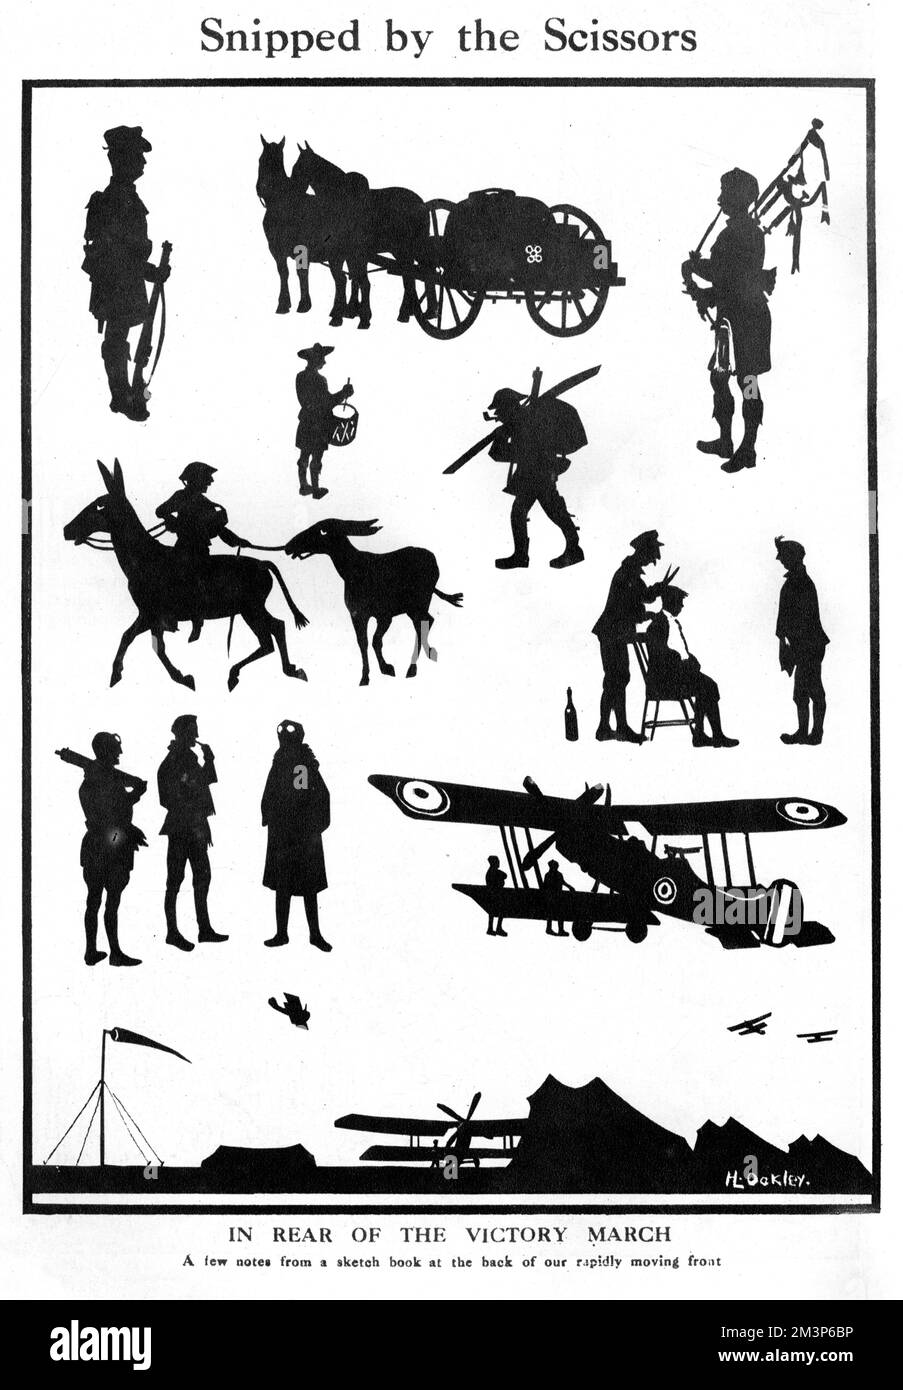 À l'arrière de la marche de la victoire - quelques scènes de l'arrière du front britannique en marche rapide vers la fin de la première Guerre mondiale, coupé en silhouette par le capitaine H. L. Oakley. Date: 1918 Banque D'Images